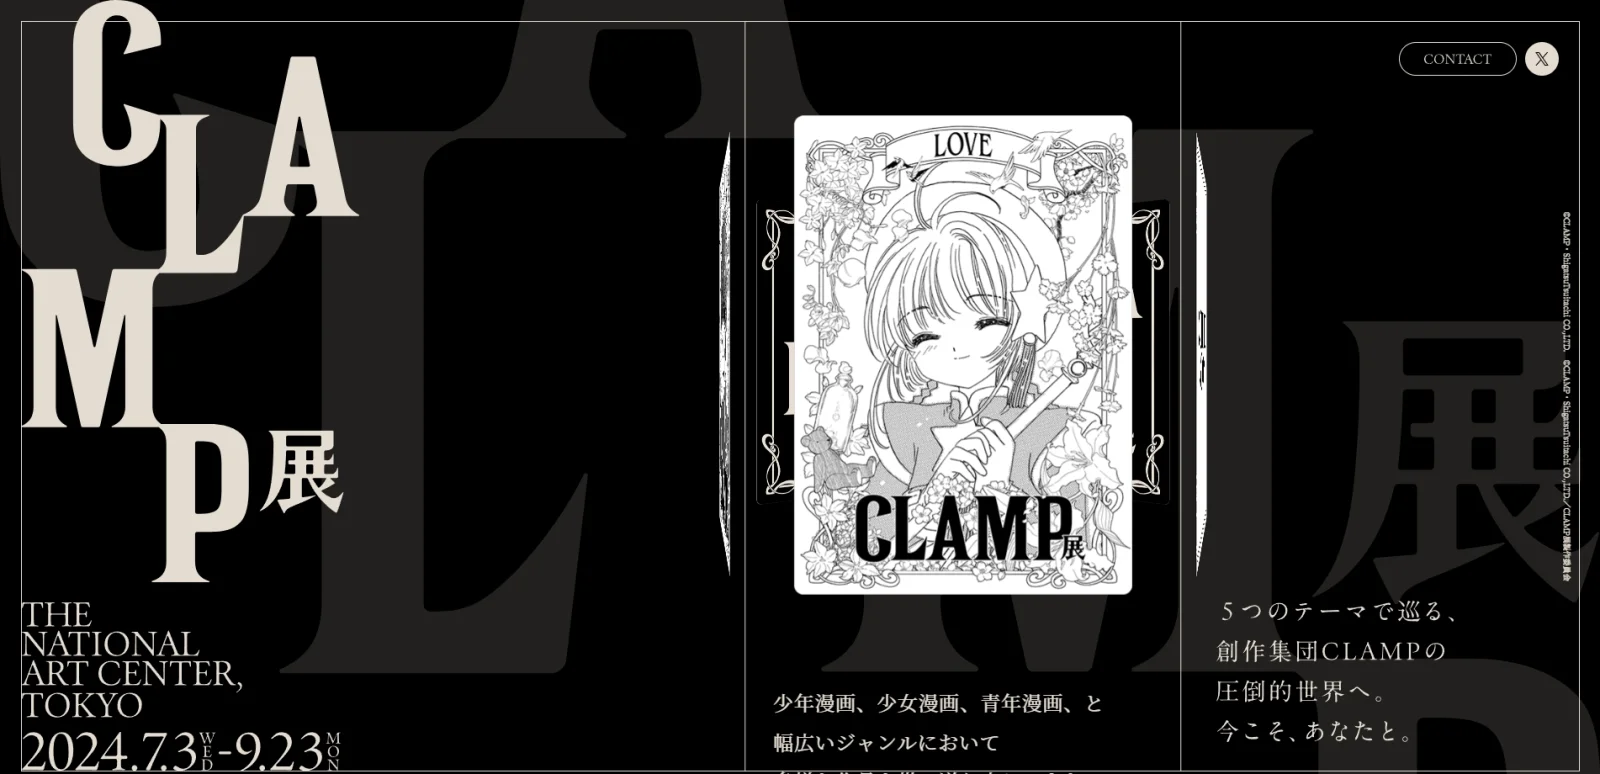 漫画团队CLAMP史上"最大规模"原画展将于今夏举办【2月29日公开壹原侑子主视觉图】